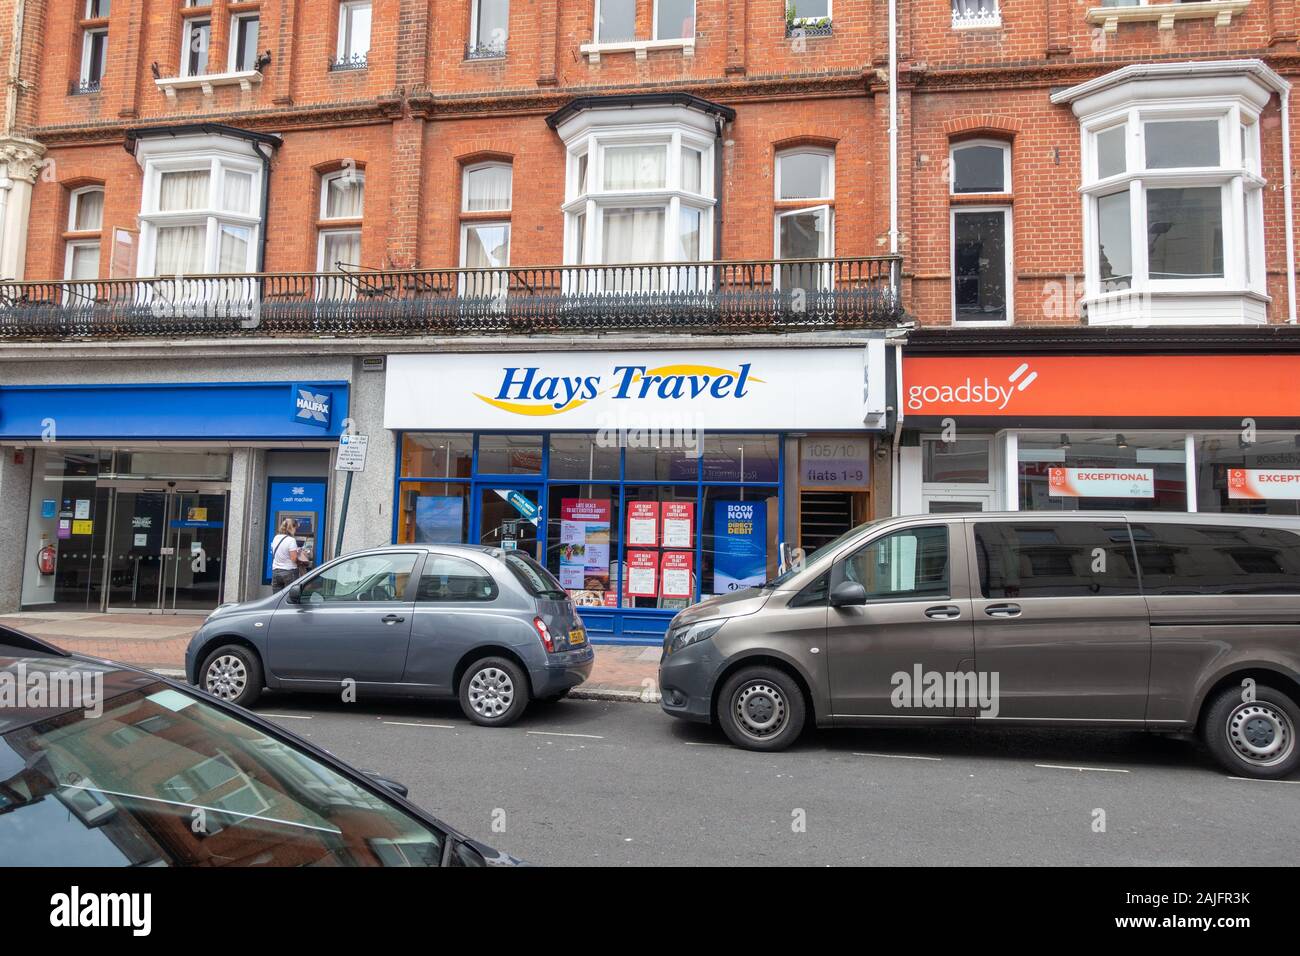 Hays Travel store, Bournemouth UK Stock Photo